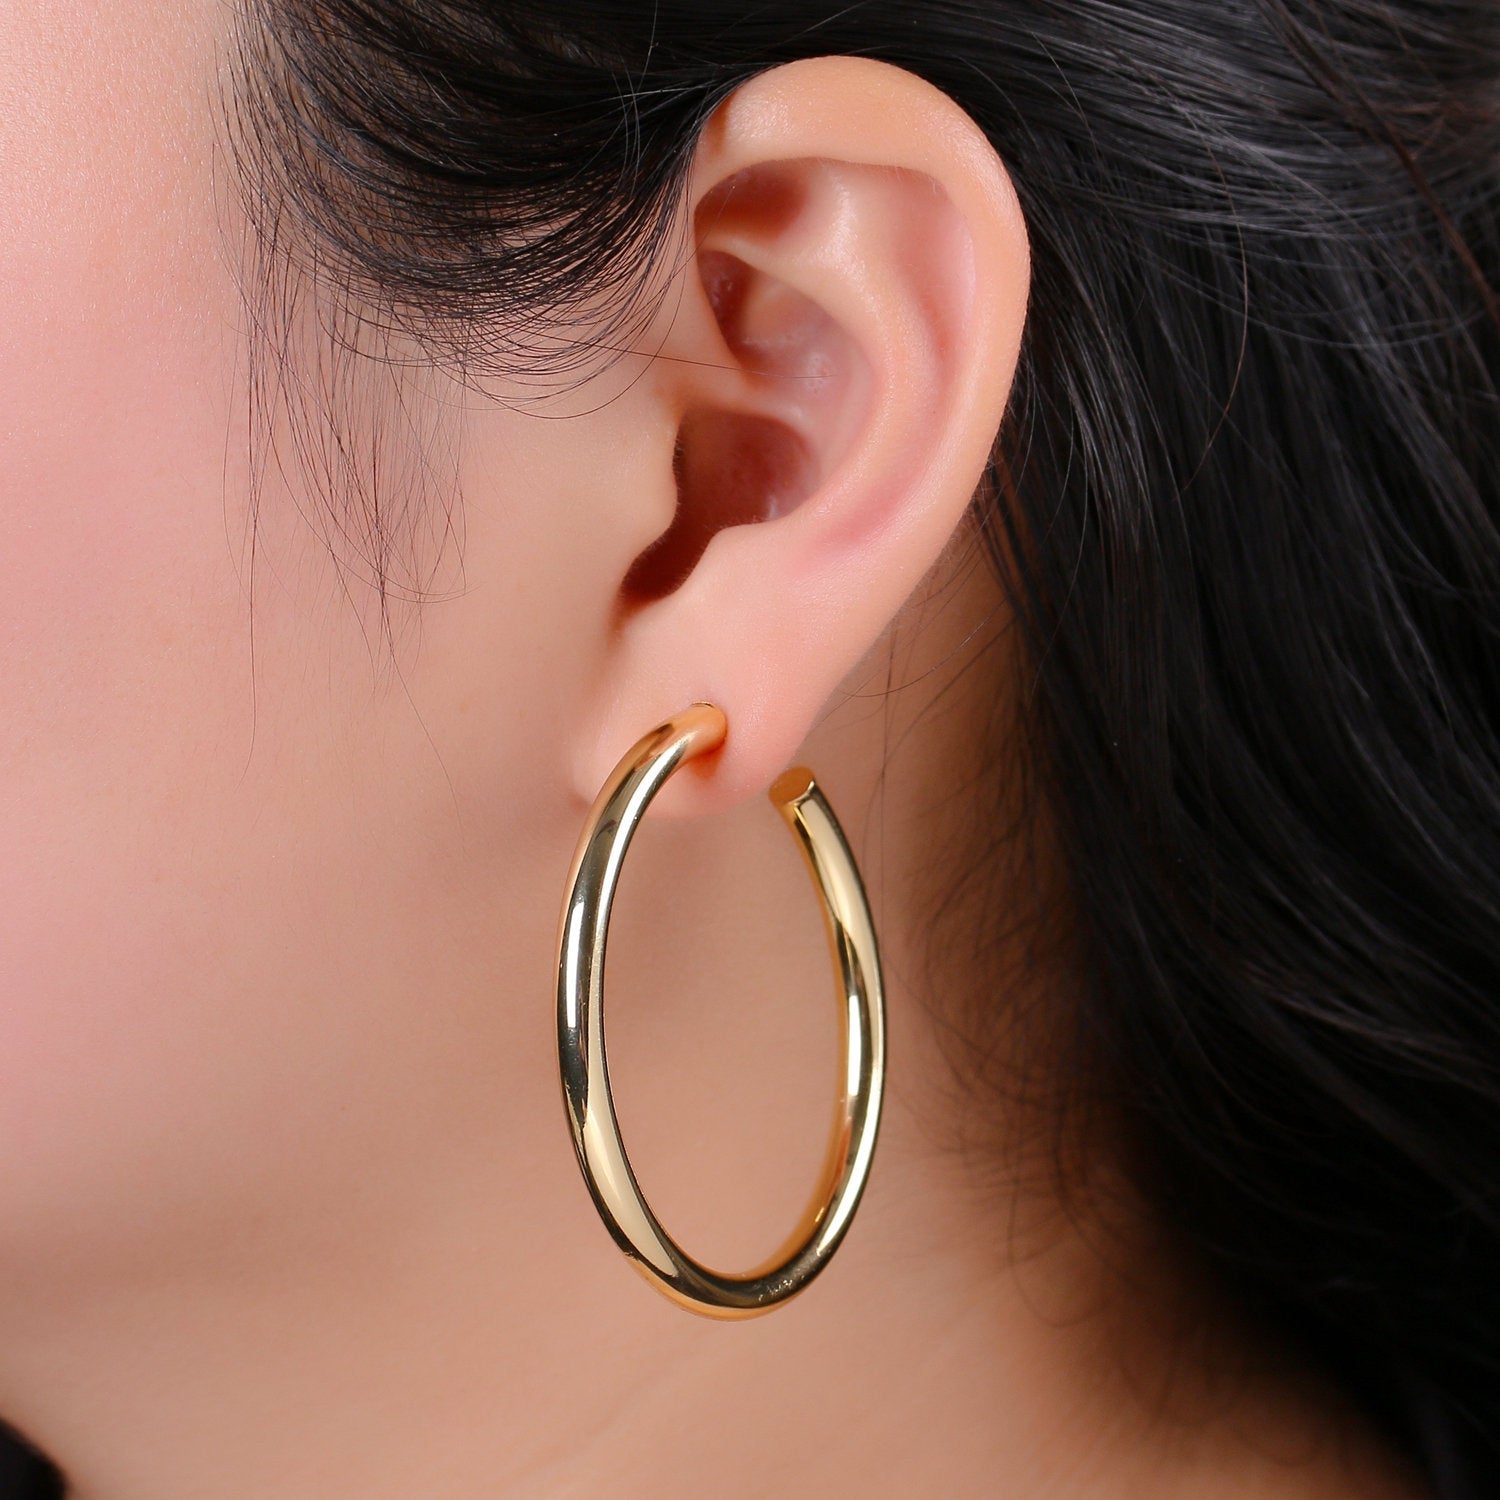 50mm Gold Thick Hoop Earrings, Gold Vermeil Hoop Earrings, Statement Hoops, Tube Hoop Earrings, Large Hoop Earrings, Big Hoop Earrings - DLUXCA